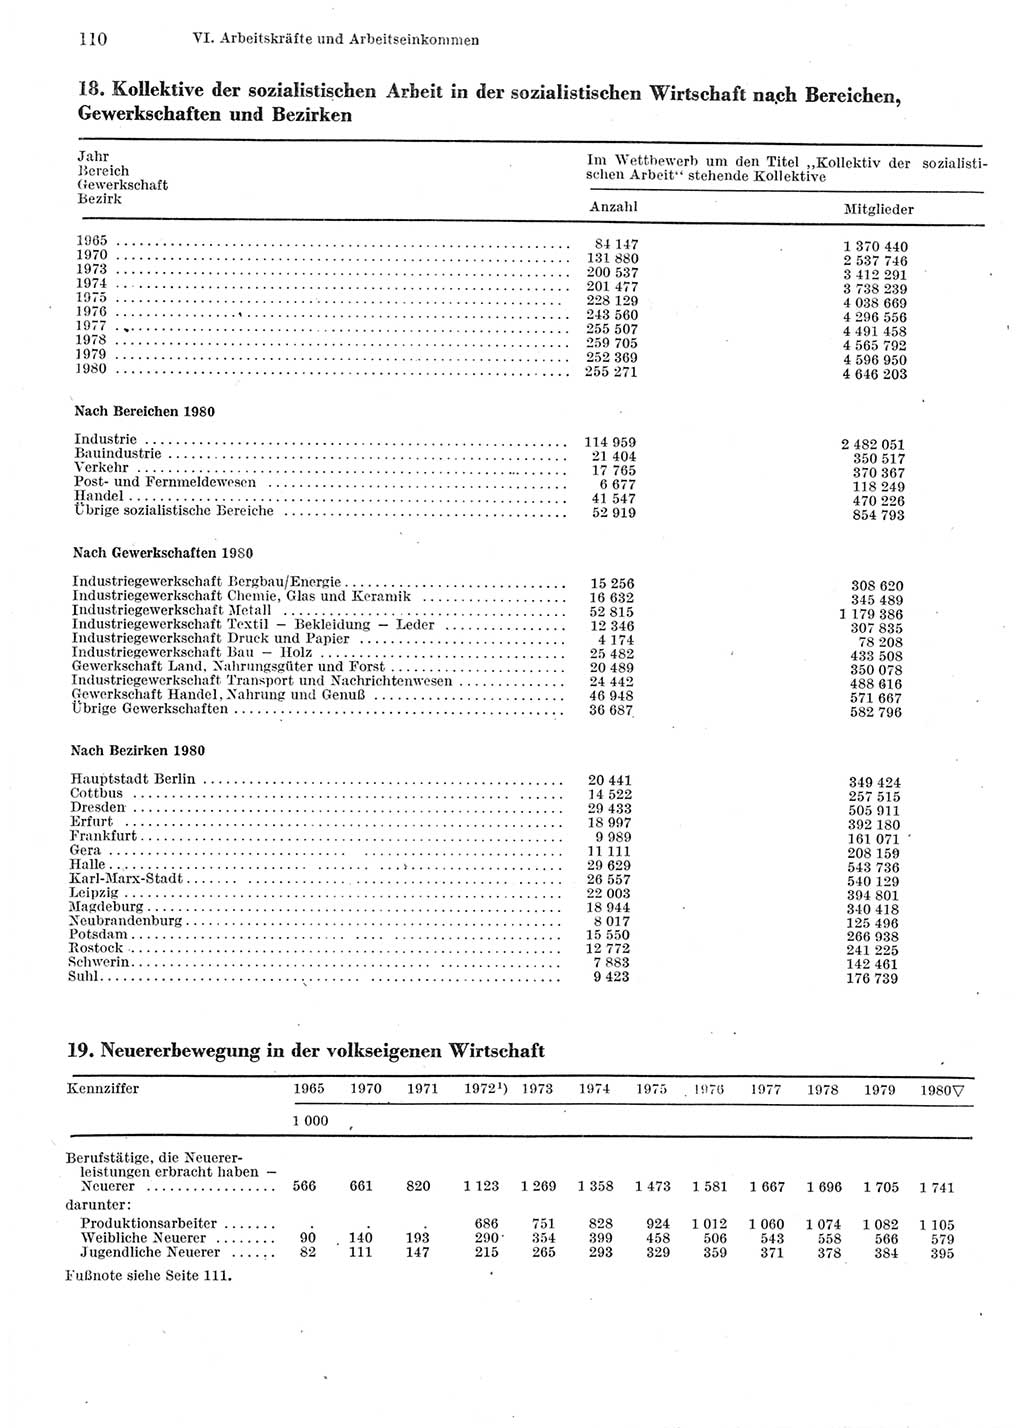 Statistisches Jahrbuch der Deutschen Demokratischen Republik (DDR) 1981, Seite 110 (Stat. Jb. DDR 1981, S. 110)